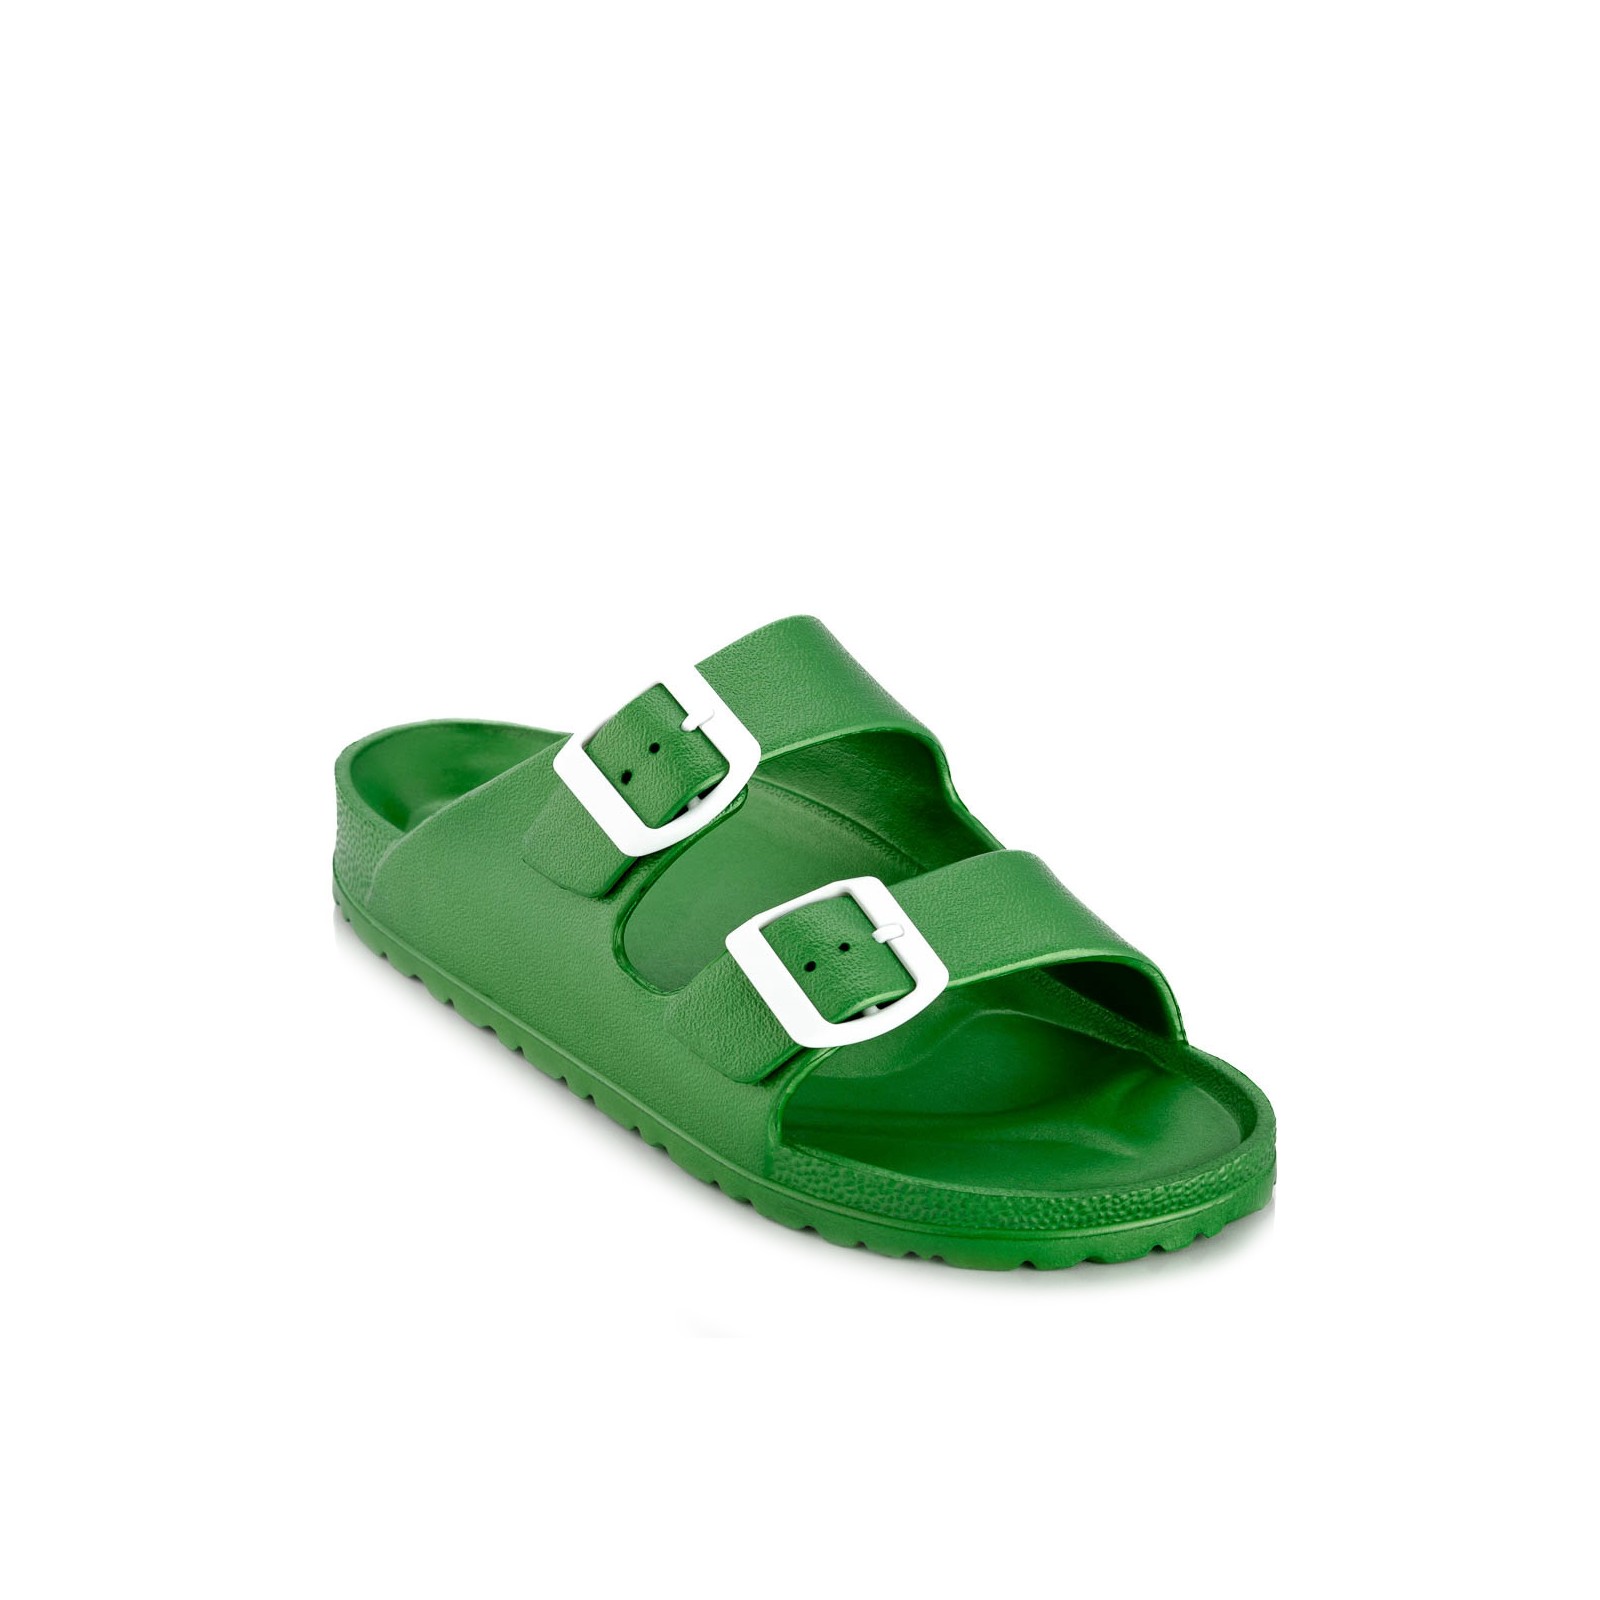 Ateneo Sea Sandals 01 Green